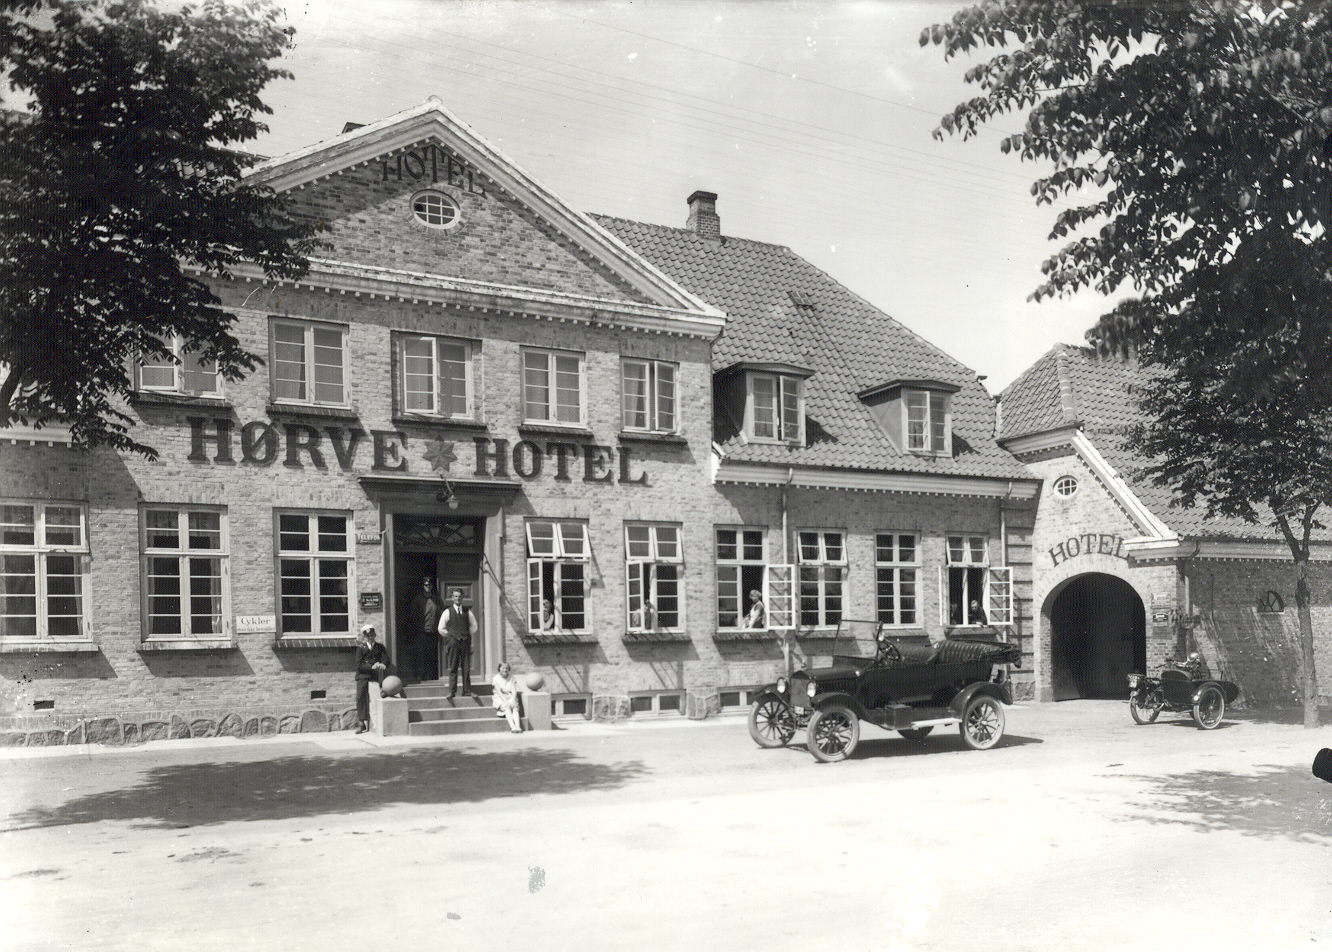 Hørve Hotel - ca. 1930 (B2137)